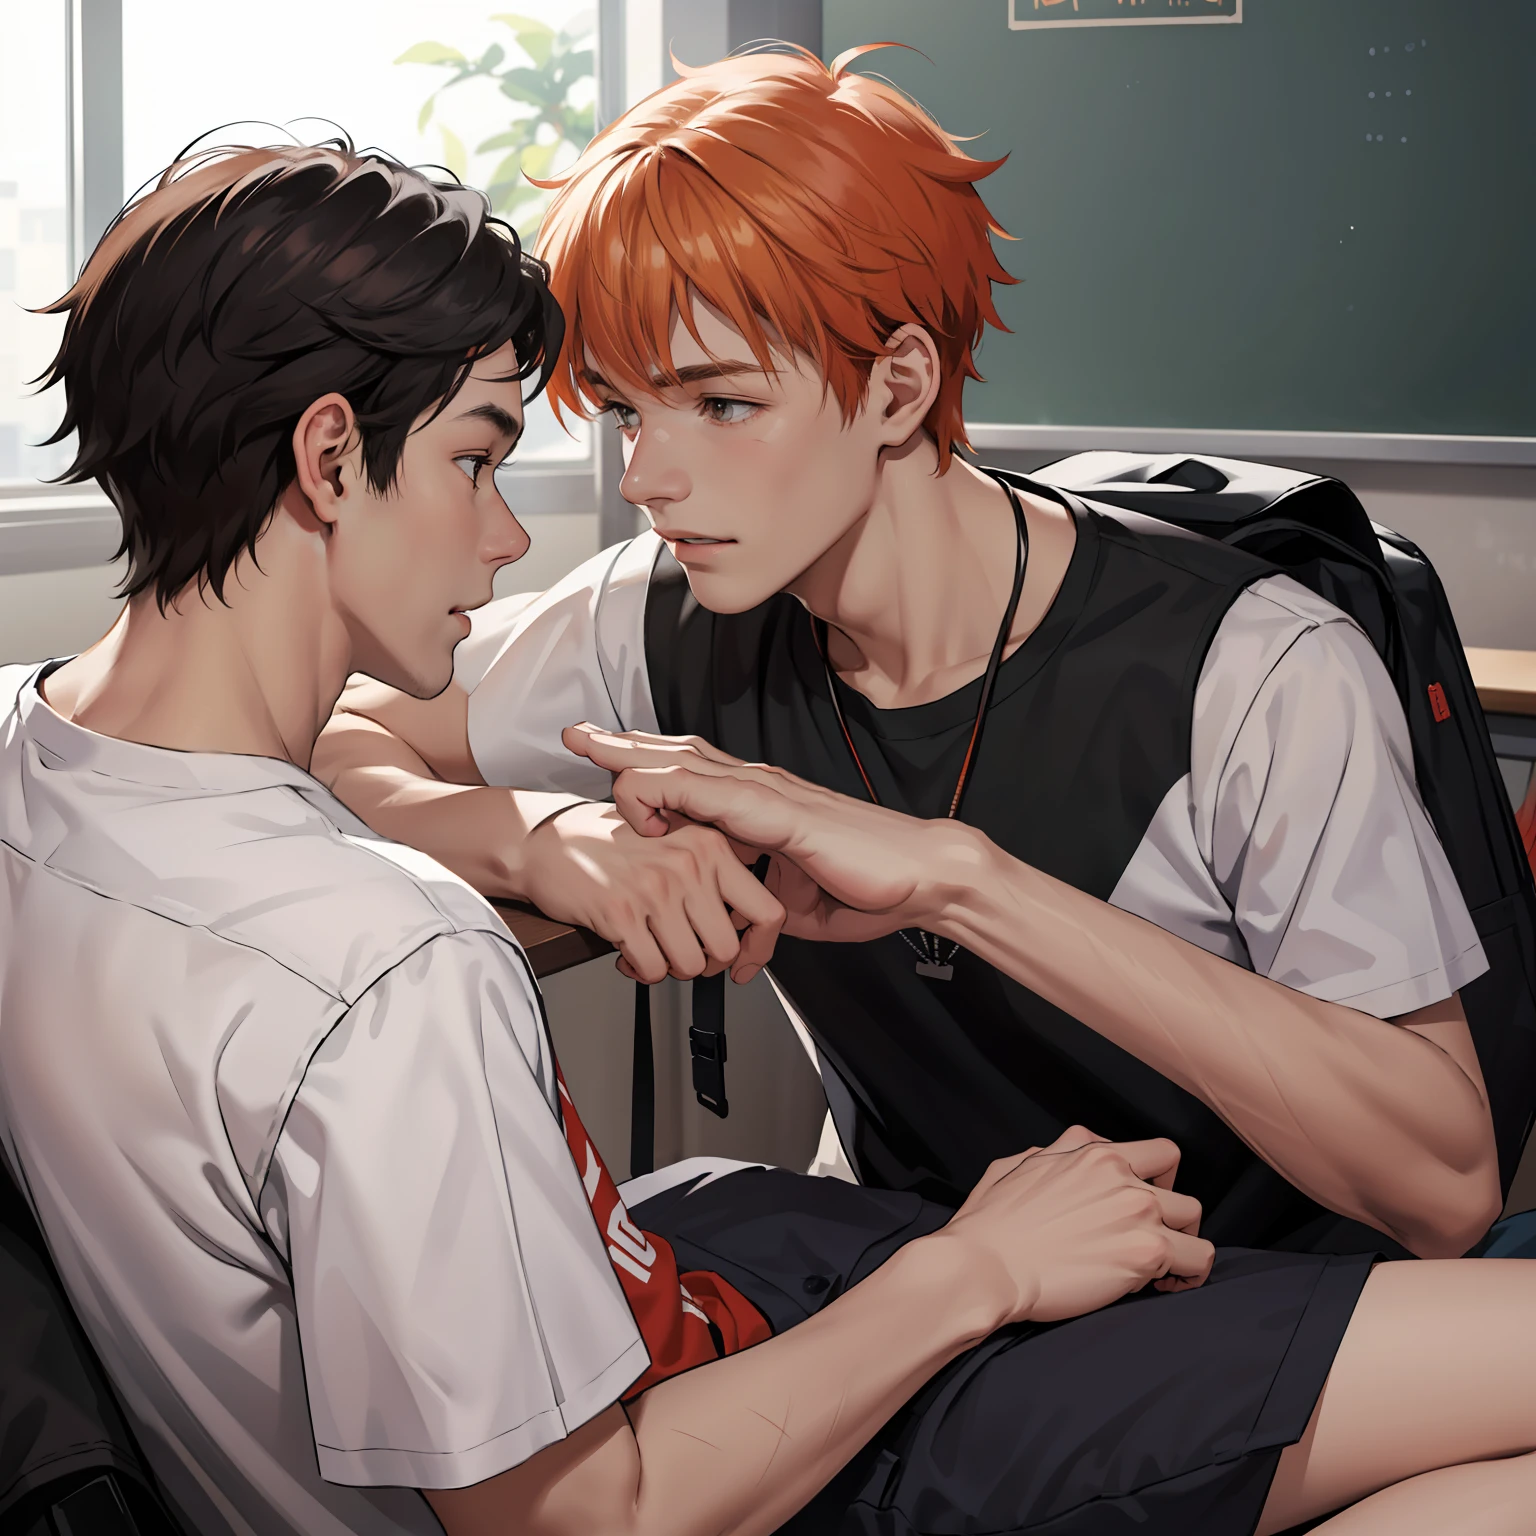 兩位 15 歲的橘髮青少年朋友正在聊天, 他們聊, 他們在學校裡聊天，他們分享一個秘密：他們幾乎是兄弟的朋友。... (使用相同的字符)